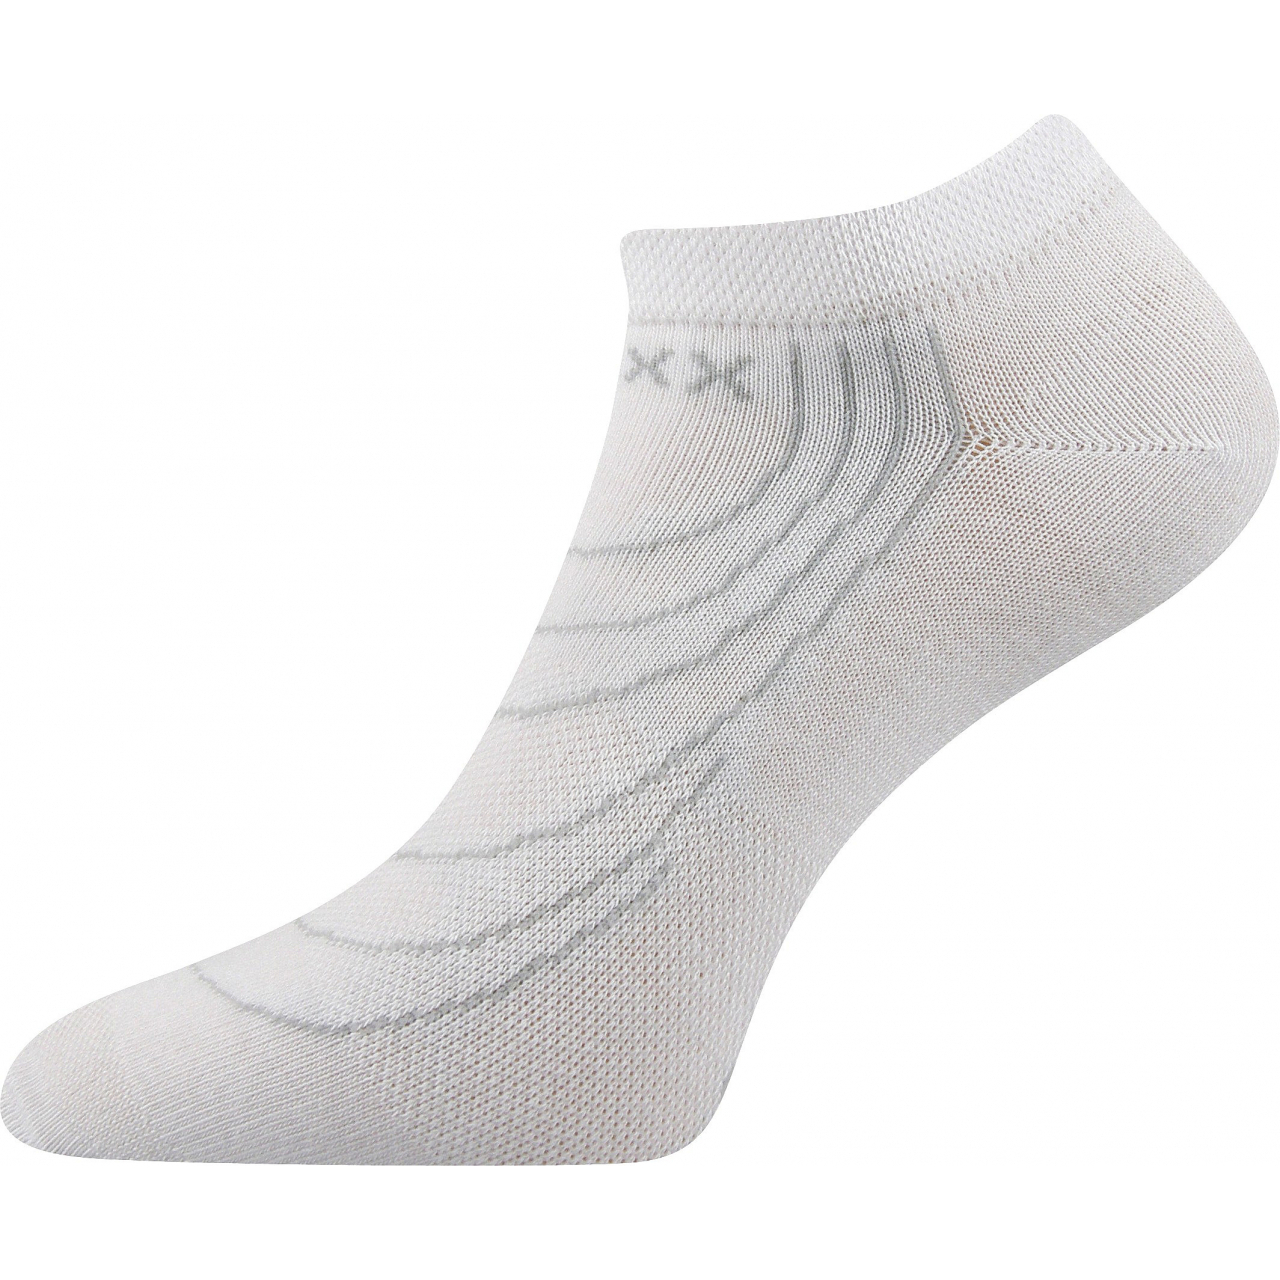 Ponožky nízké Voxx Rex - bílé, 43-46